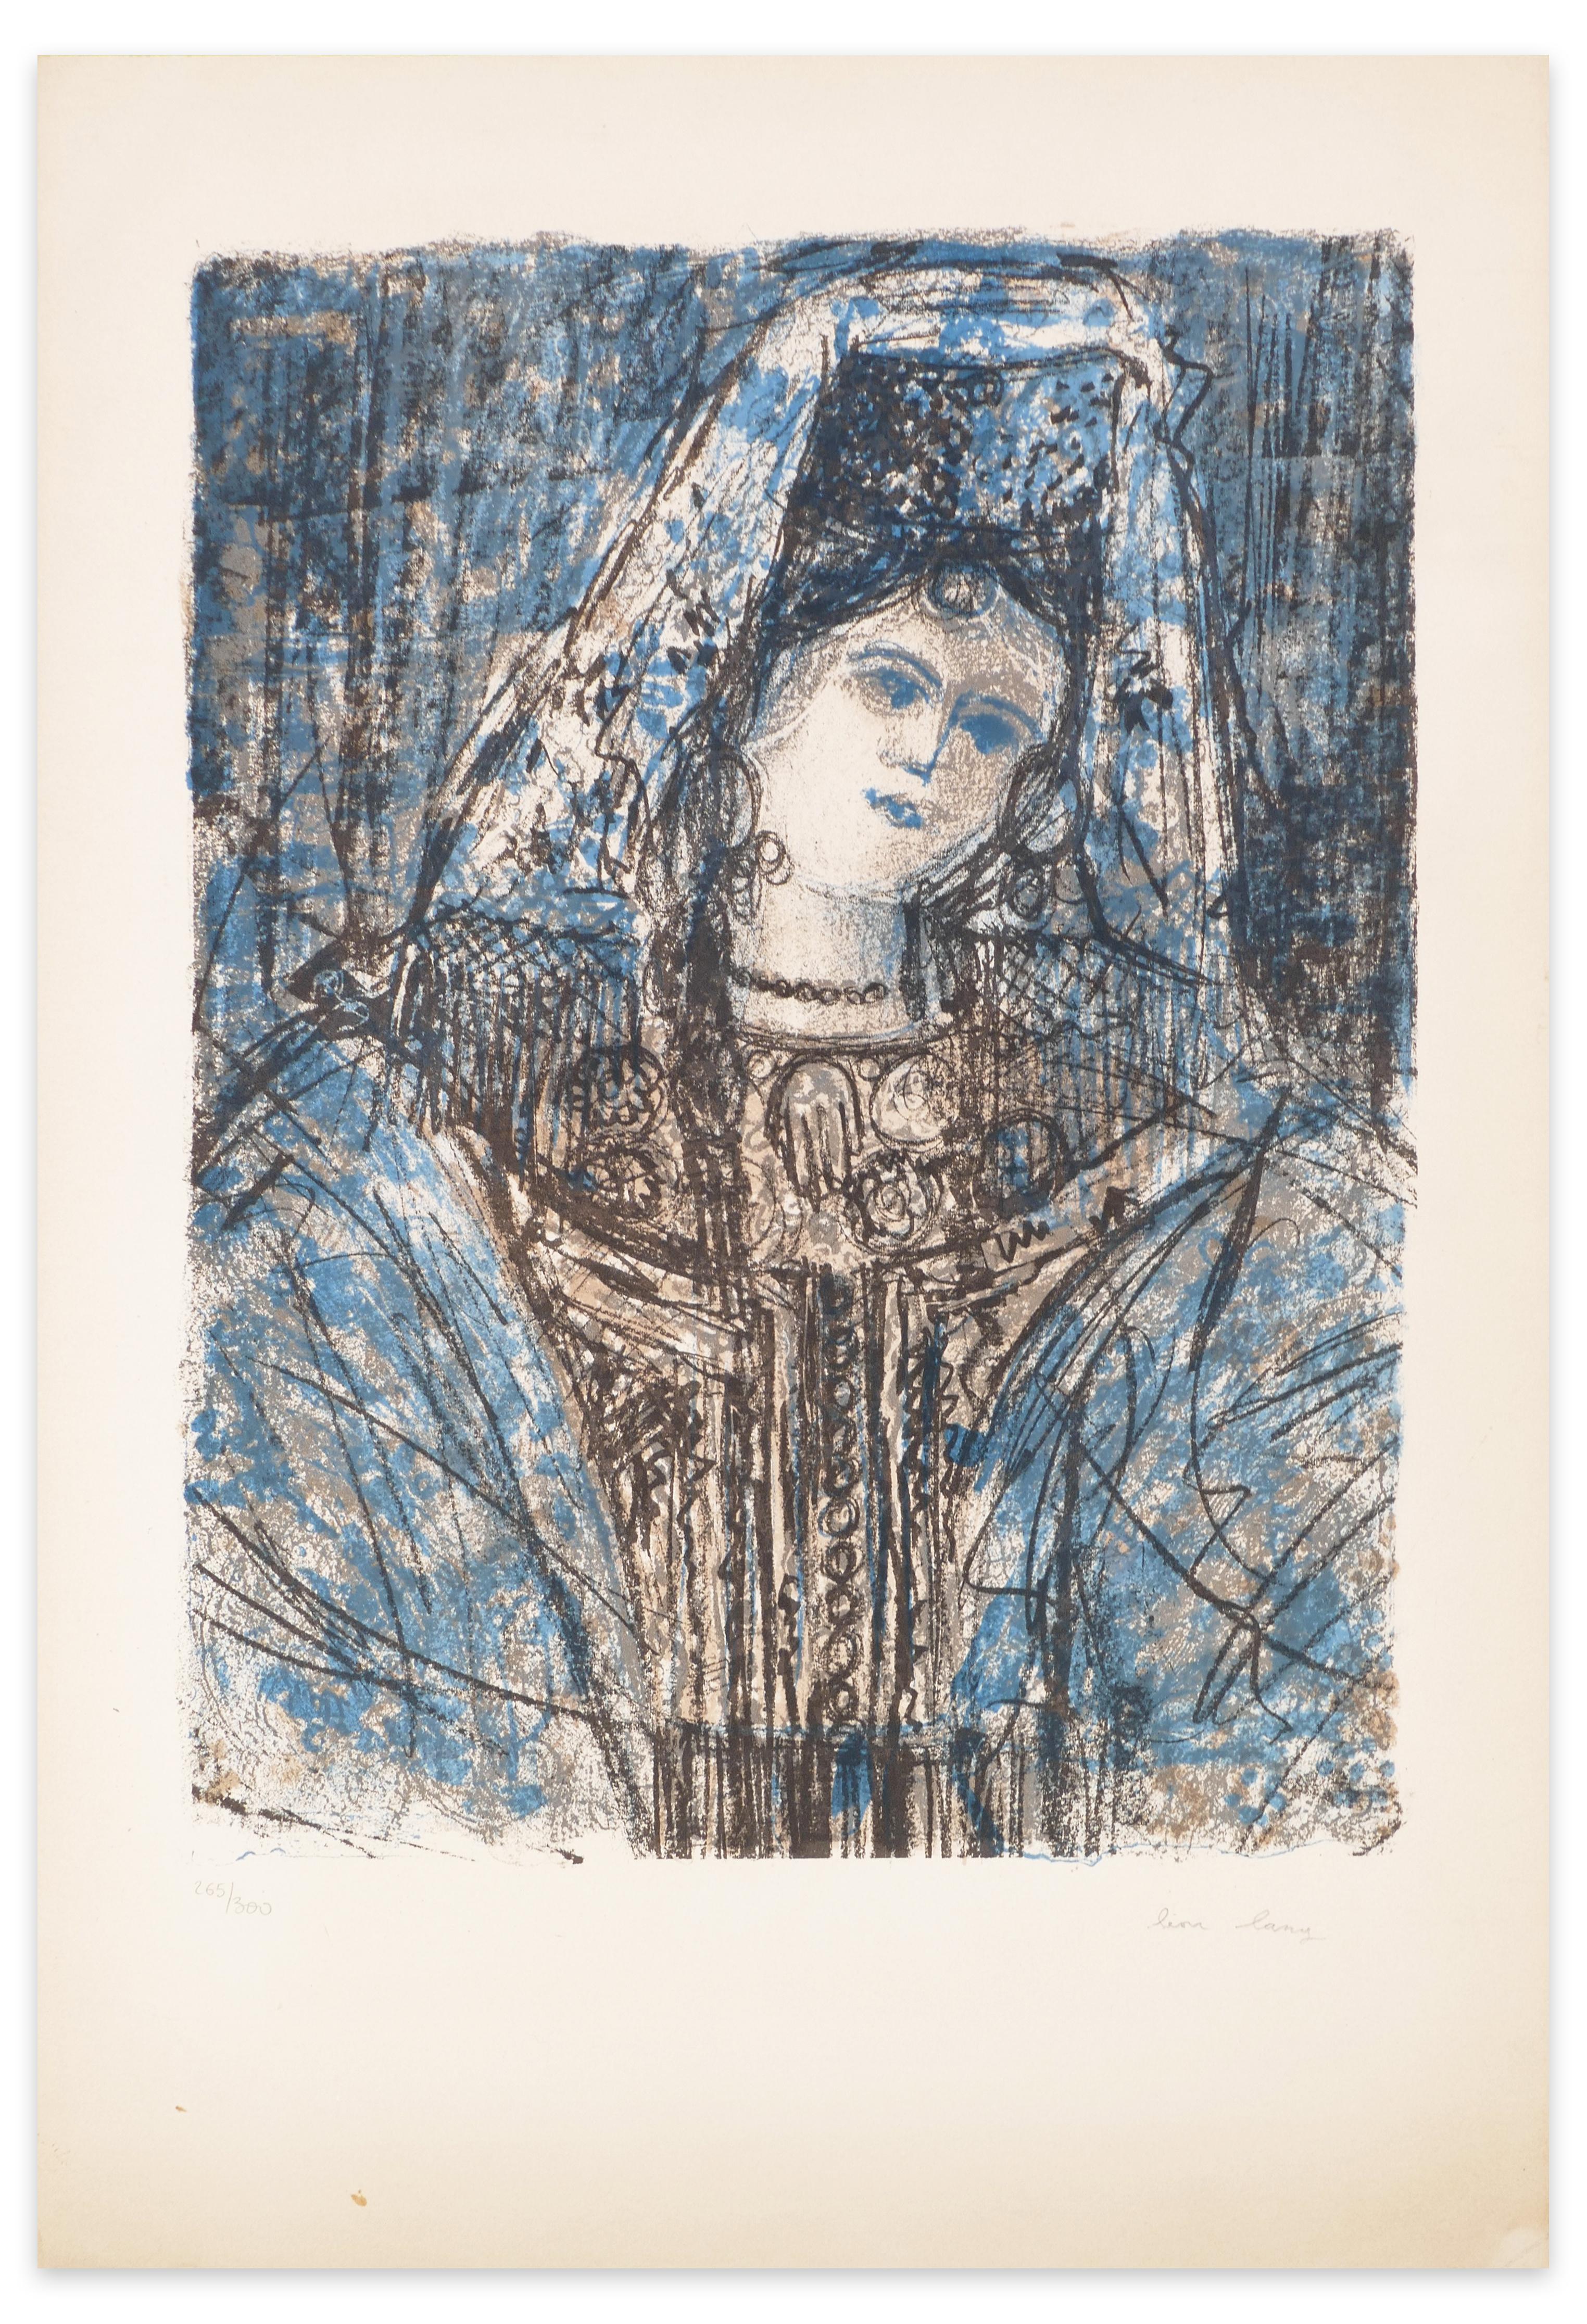 Abmessungen des Bildes: 41 x 30,3 cm

Frau mit Kopfschmuck ist ein Originalkunstwerk von Léon Lang aus den 1970er Jahren.

Farbige Original-Lithographie. 

Handsigniert vom Künstler in der rechten unteren Ecke. Links unten nummeriert. Auflage